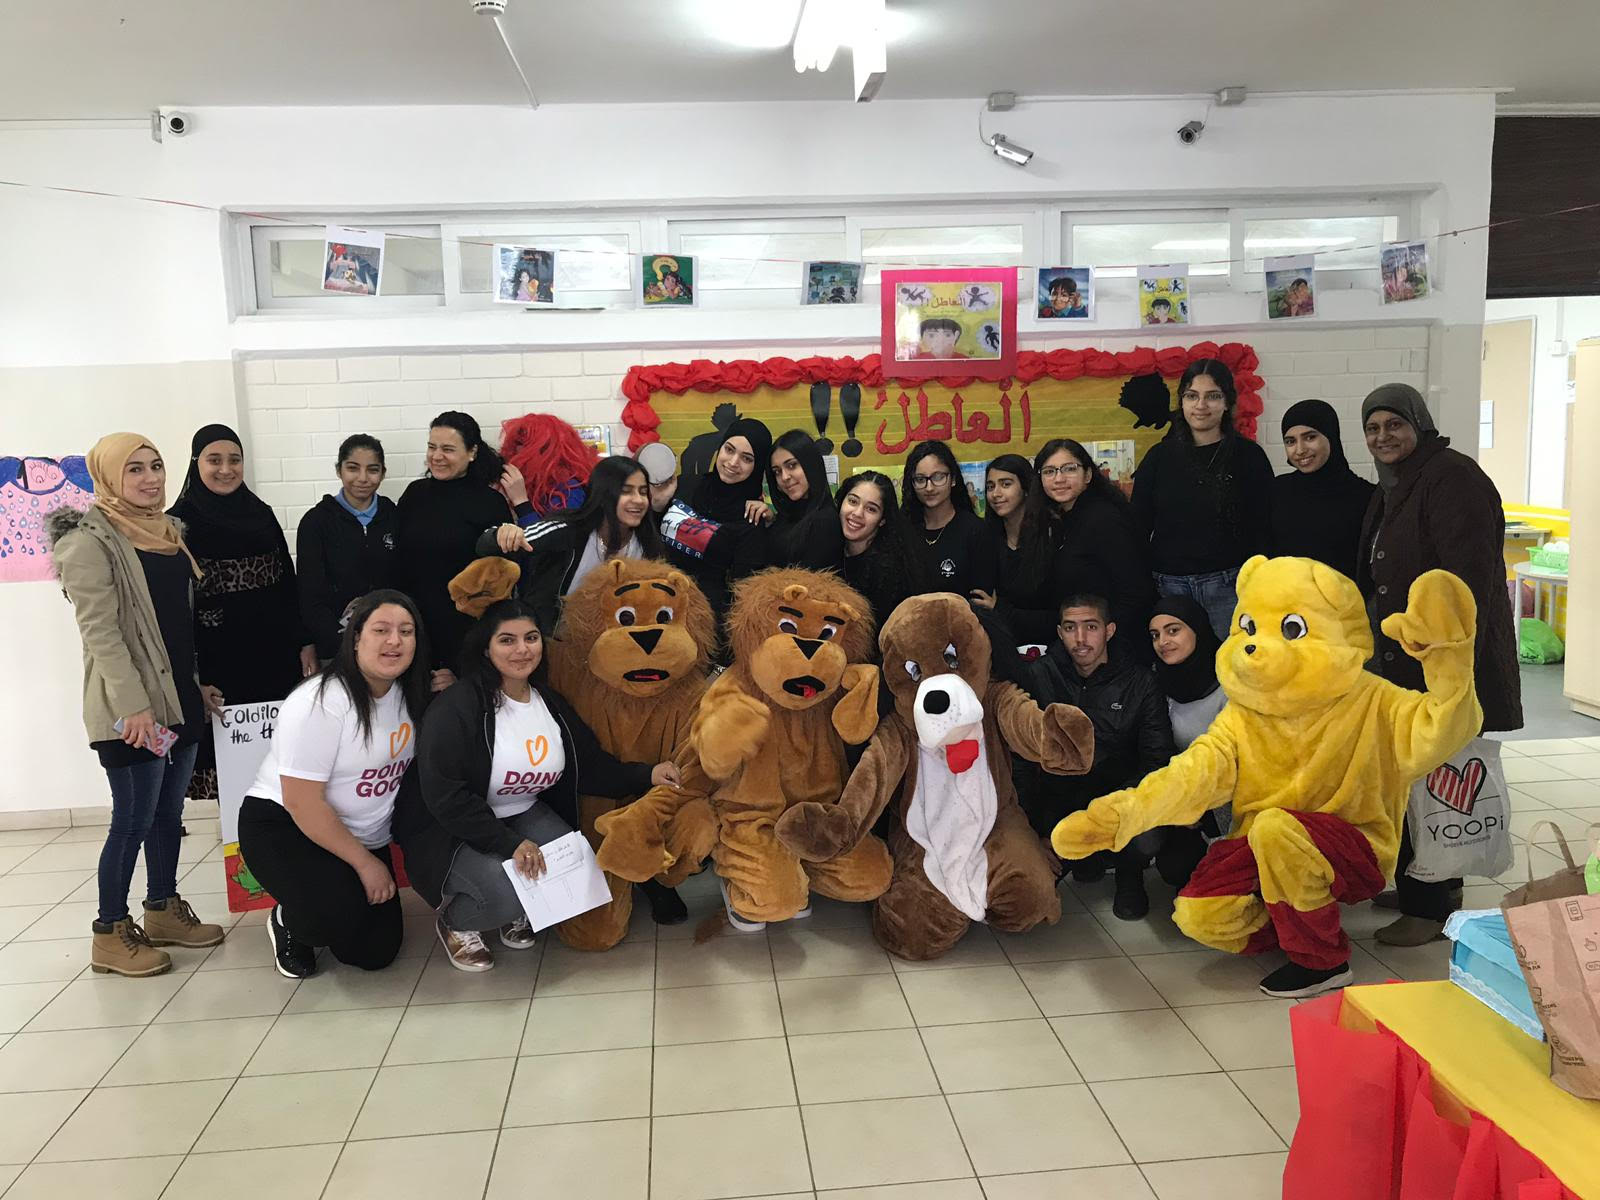 روح العطاء والتطوع للخير في يوم الأعمال الخيرية في مدرسة يافا الشاملة